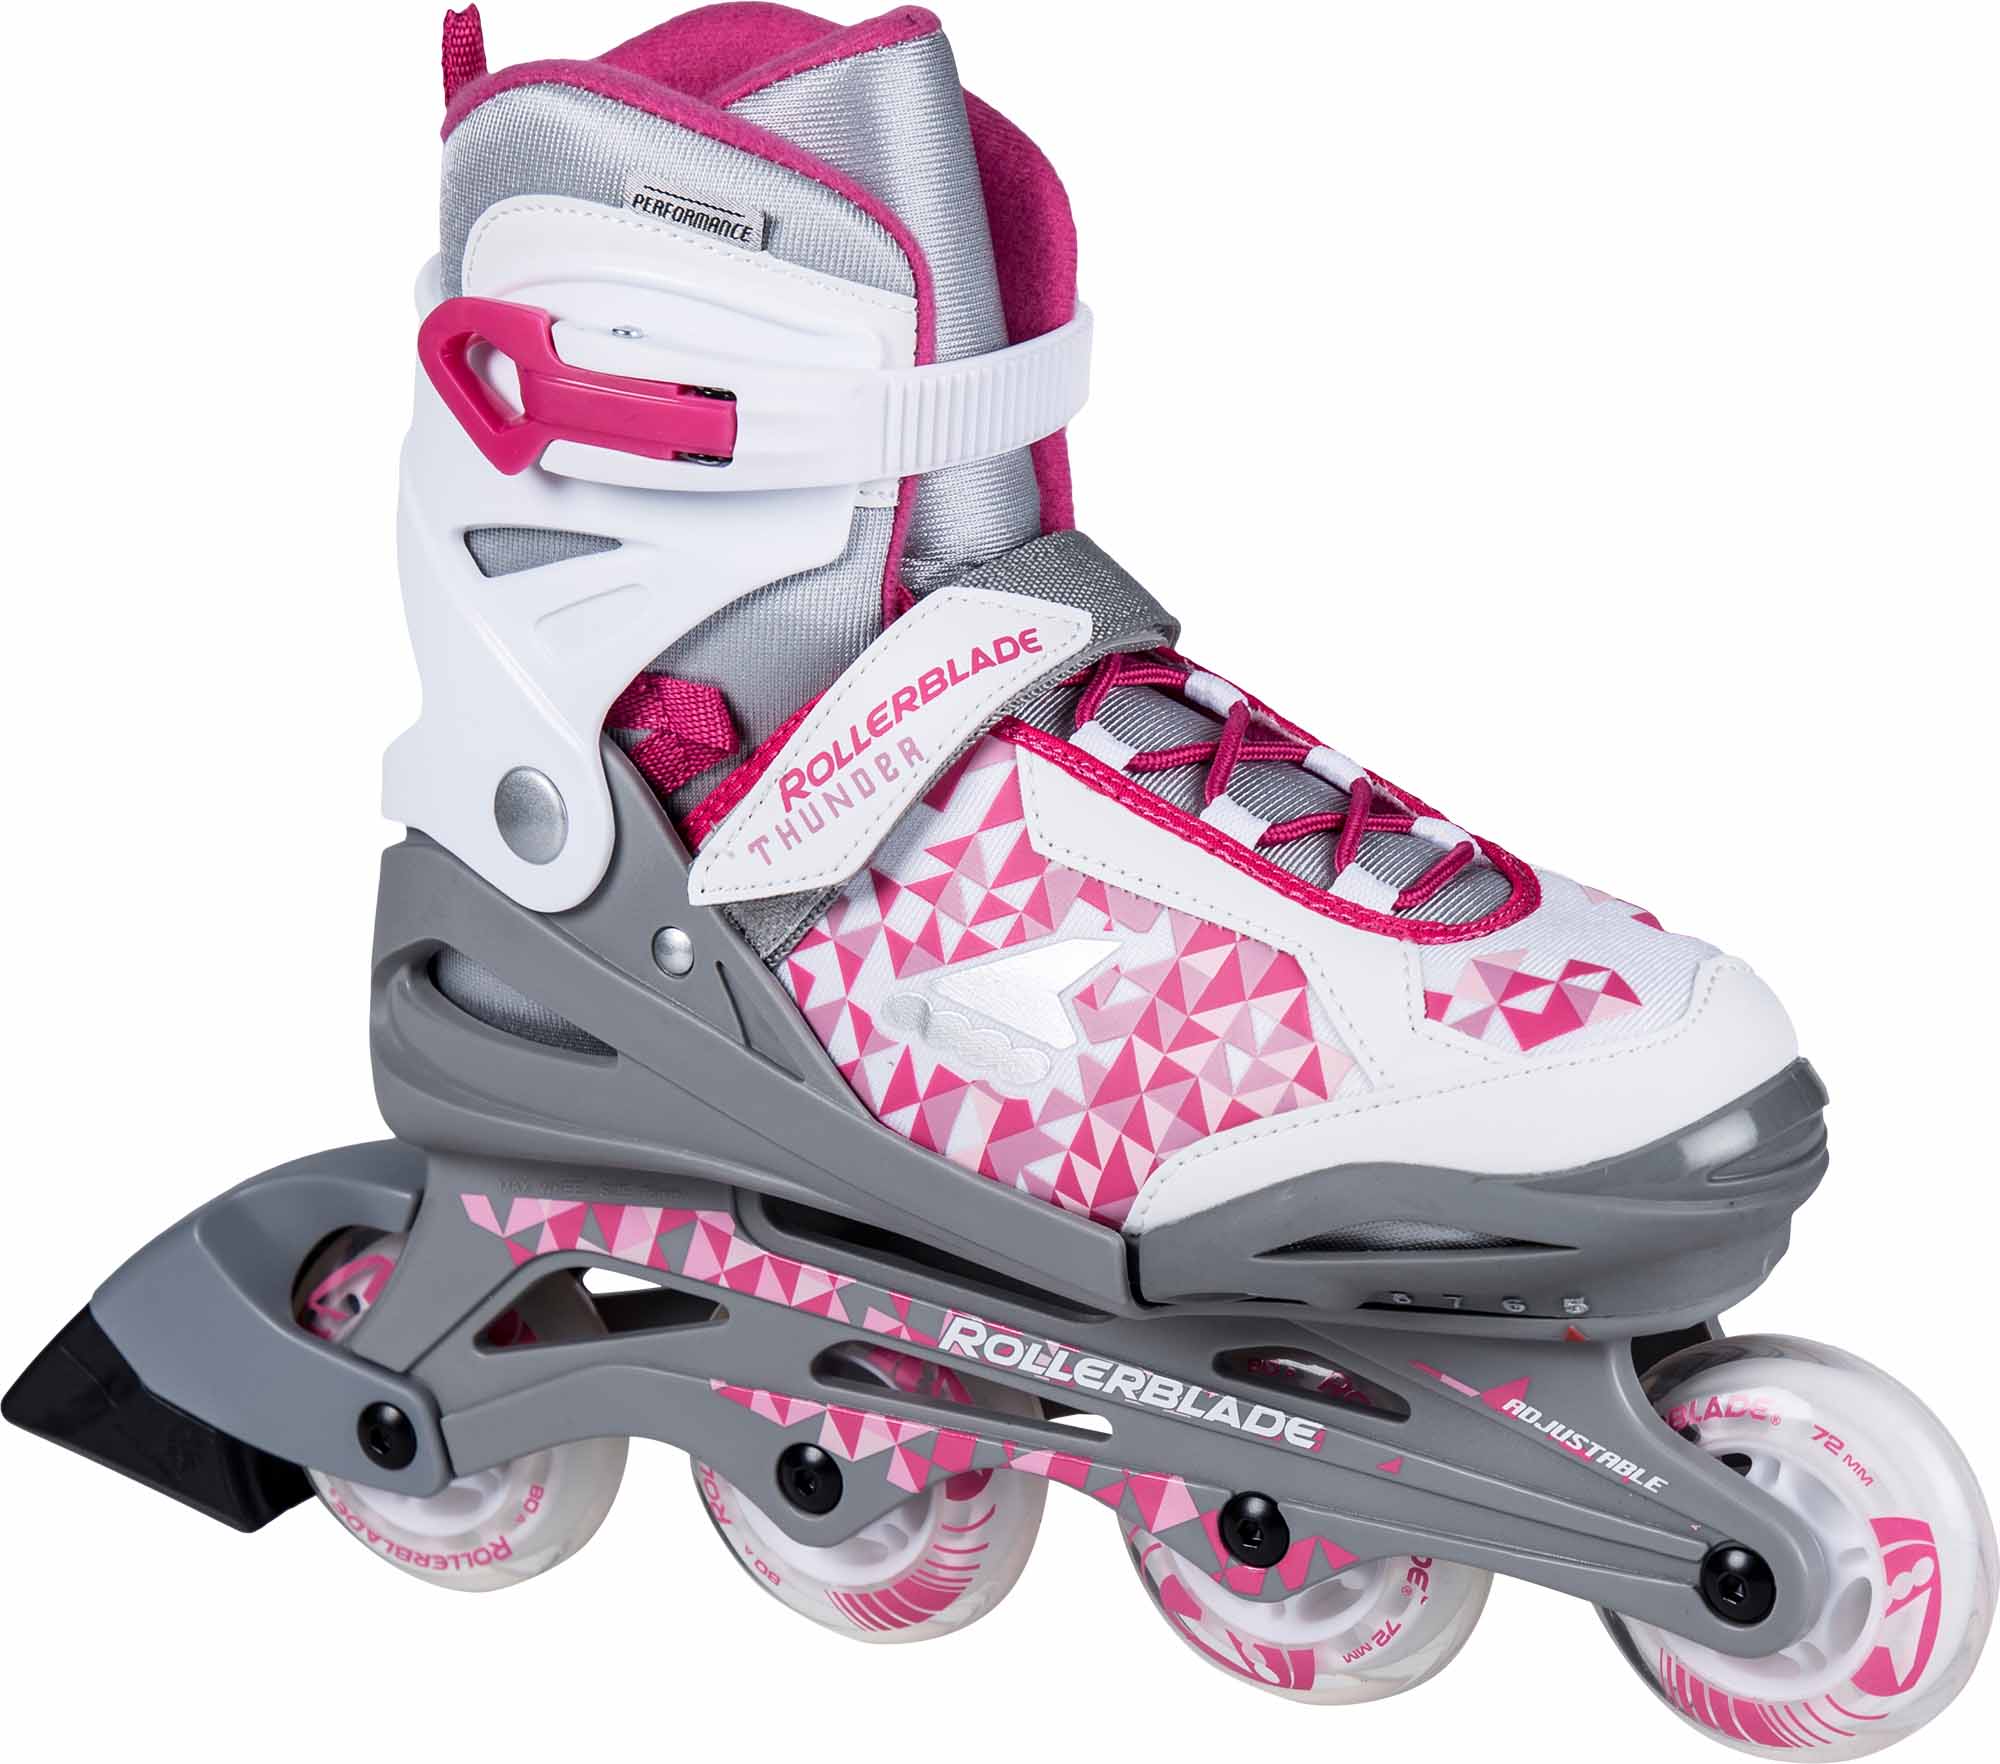 Rollerblade Thunder kinder inline skates 72 mm silver / pink